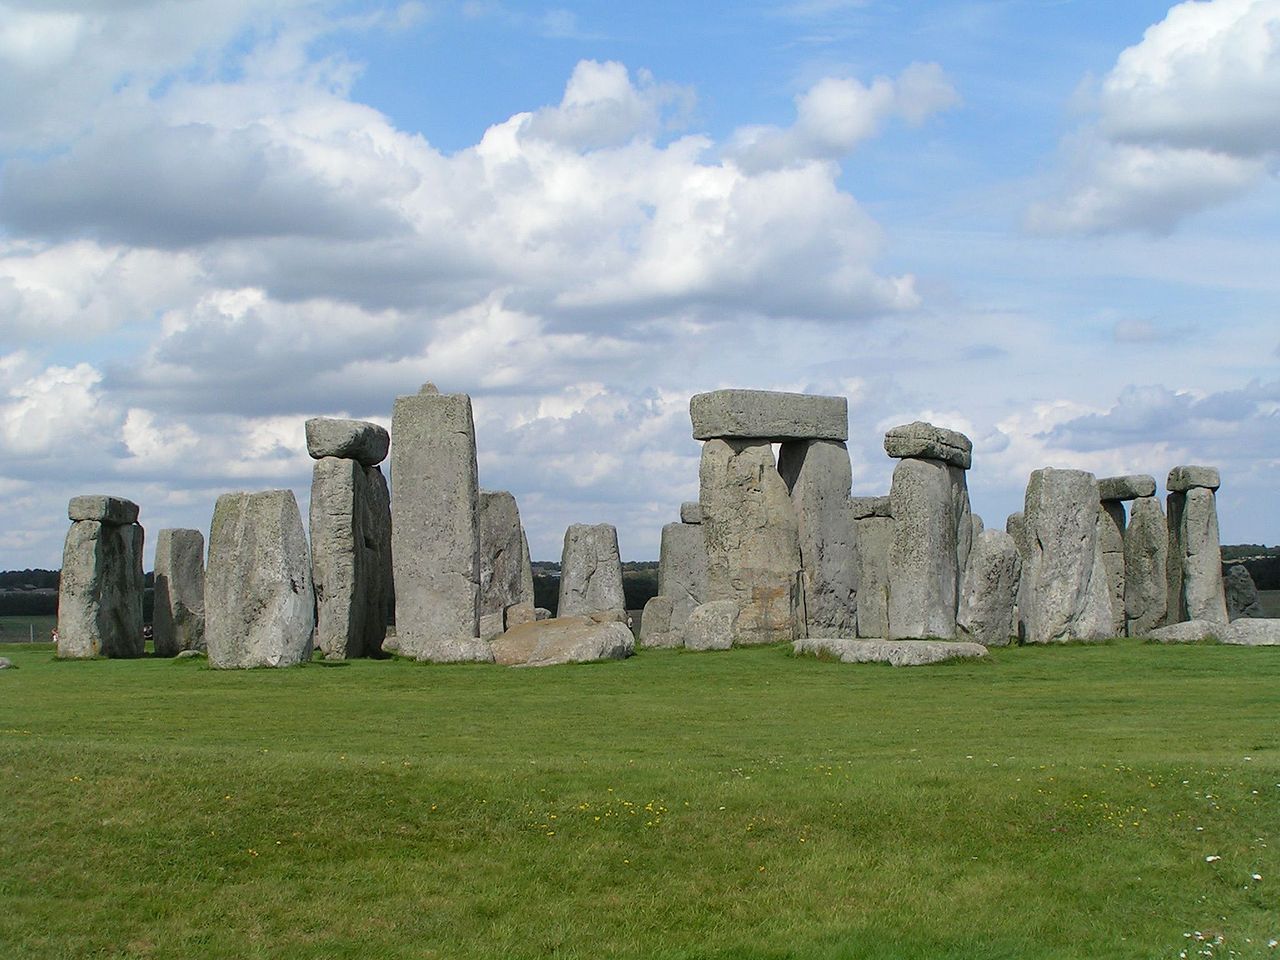 Vista total del complejo principal llamado Stonehenge. Imagen: Stefan Kühn. Fuente: Wikimedia Commons.